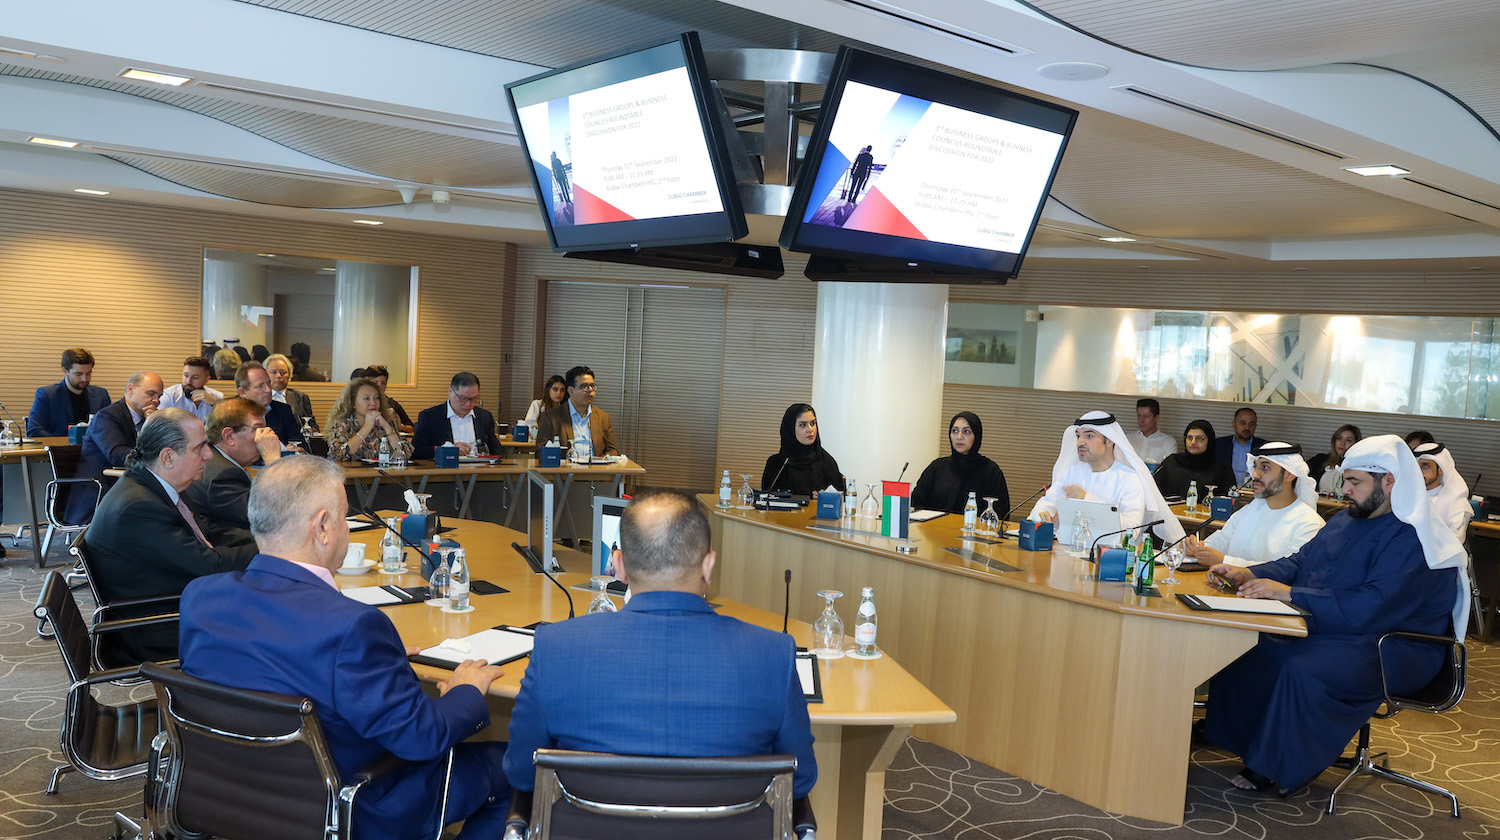 غرفة تجارة دبي تستعرض المشهد الاقتصادي وتناقش فرص وتحديات مجتمع الأعمال في الإمارة